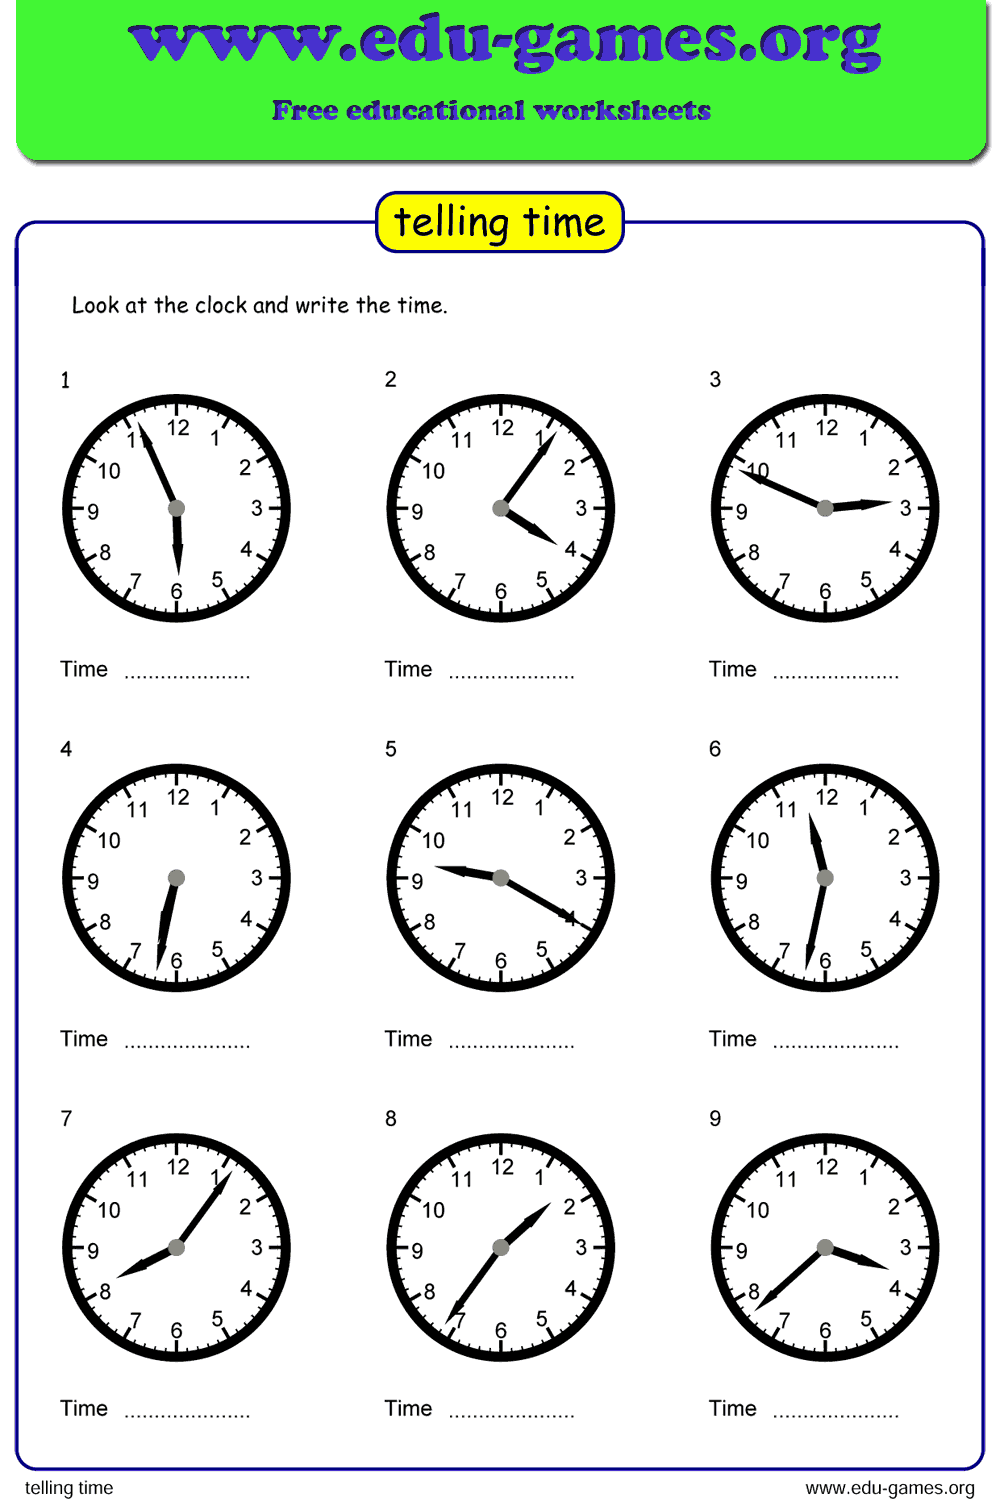 Telling time worksheet generator